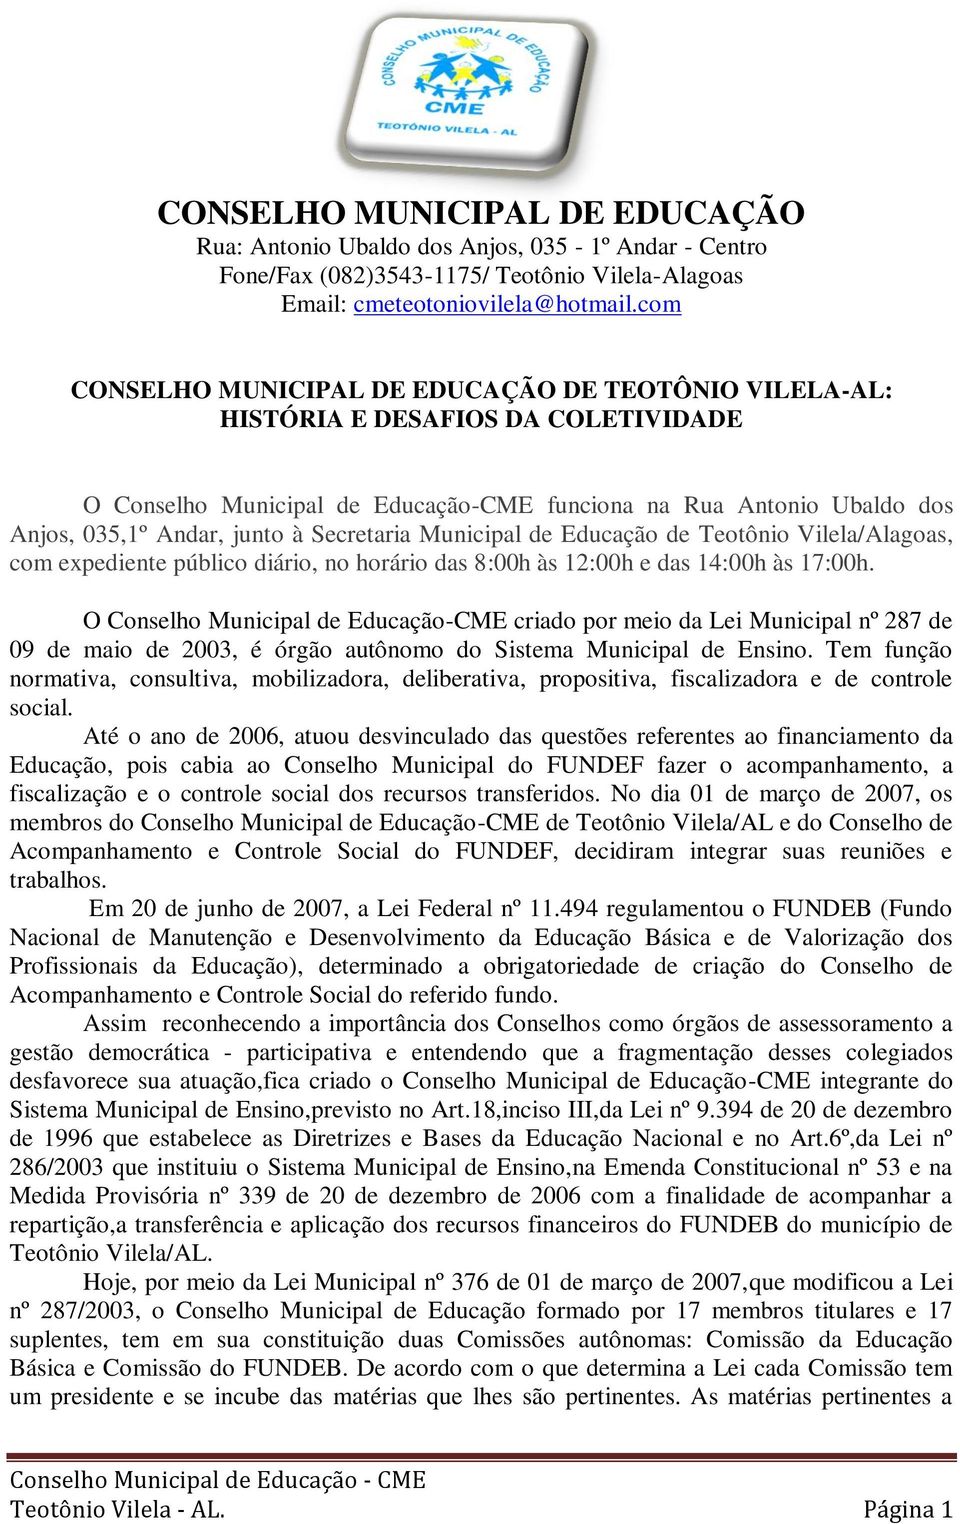 Secretaria Municipal de Educação de Teotônio Vilela/Alagoas, com expediente público diário, no horário das 8:00h às 12:00h e das 14:00h às 17:00h.